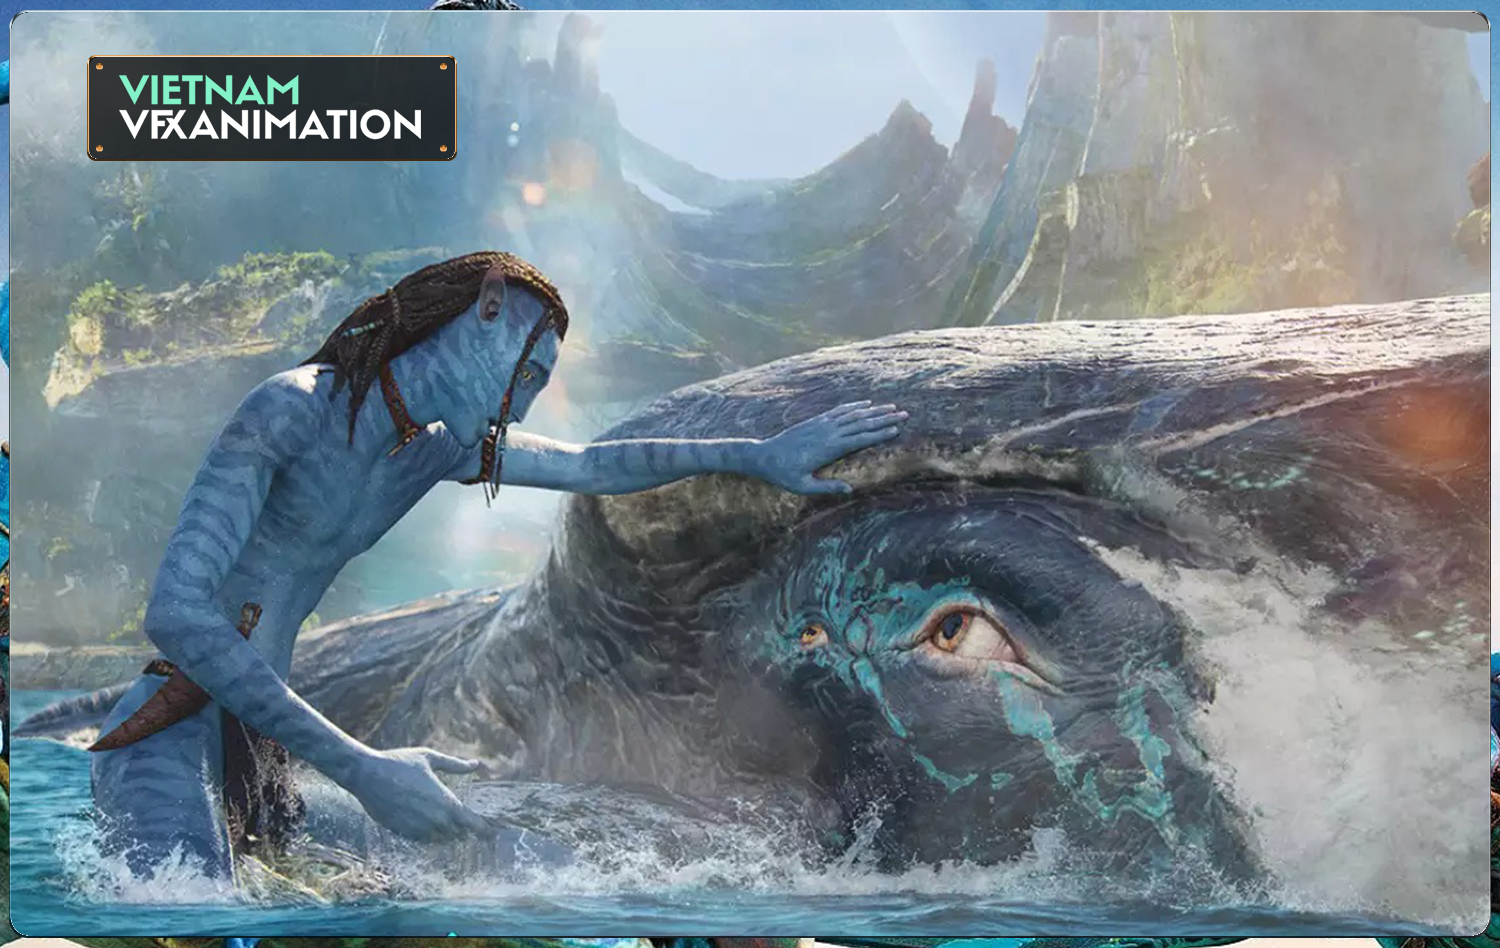 Review Avatar The Way of Water Đại tiệc kỹ xảo vượt qua giới hạn điện  ảnh